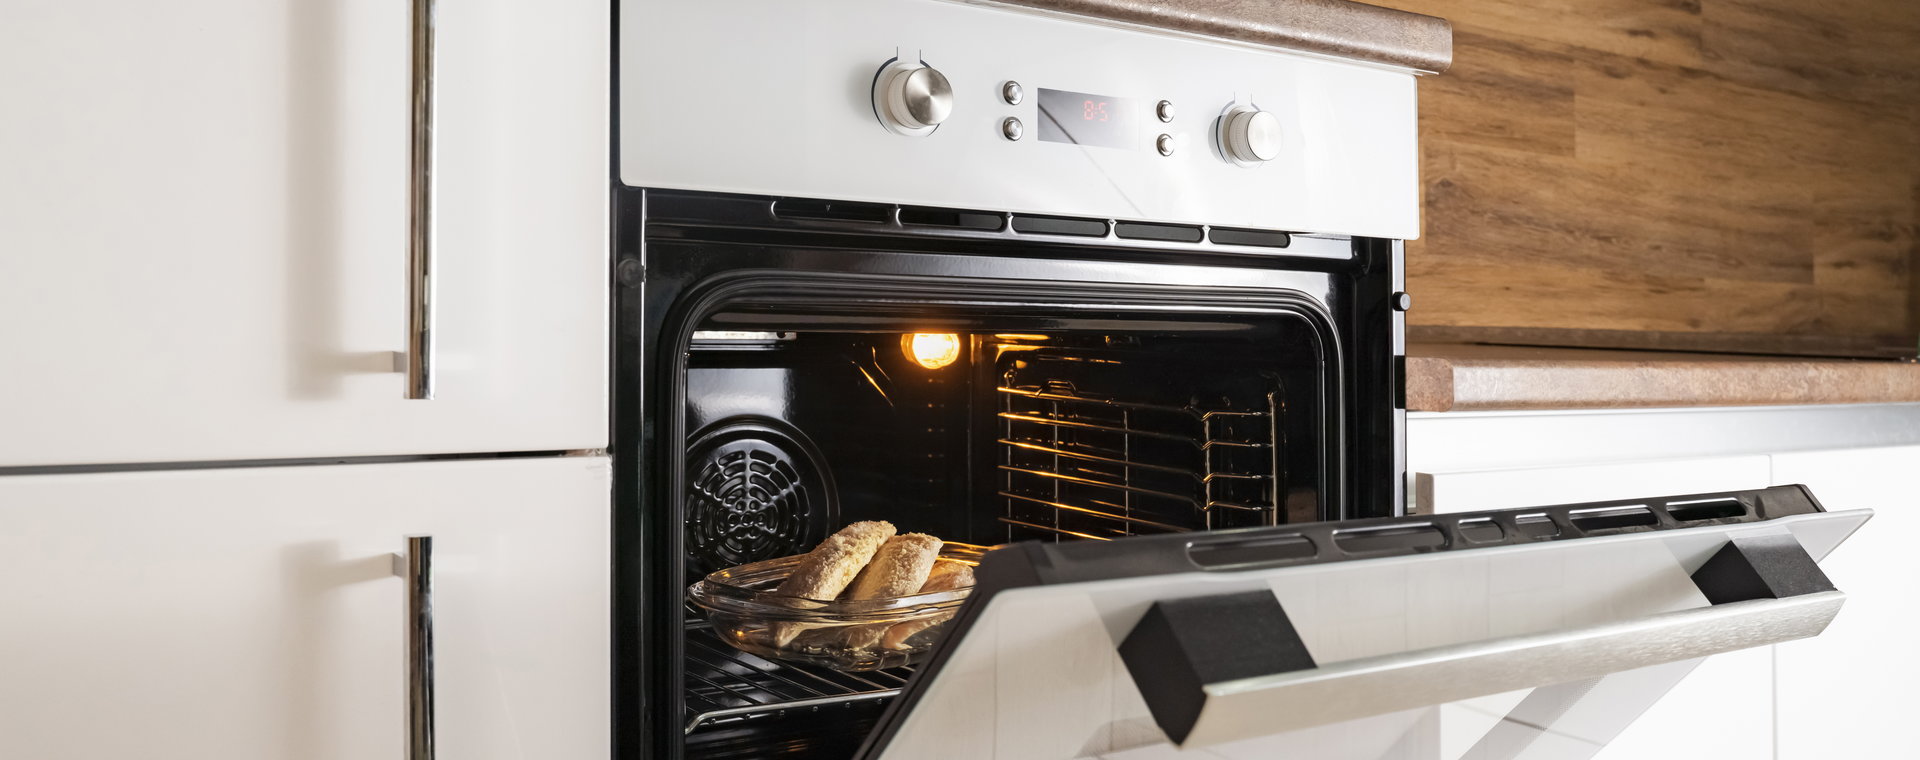 Poznaj trzy nowoczesne i wysoce energooszczędne elektryczne piekarniki parowe i zmień sposób myślenia o przygotowywaniu posiłków